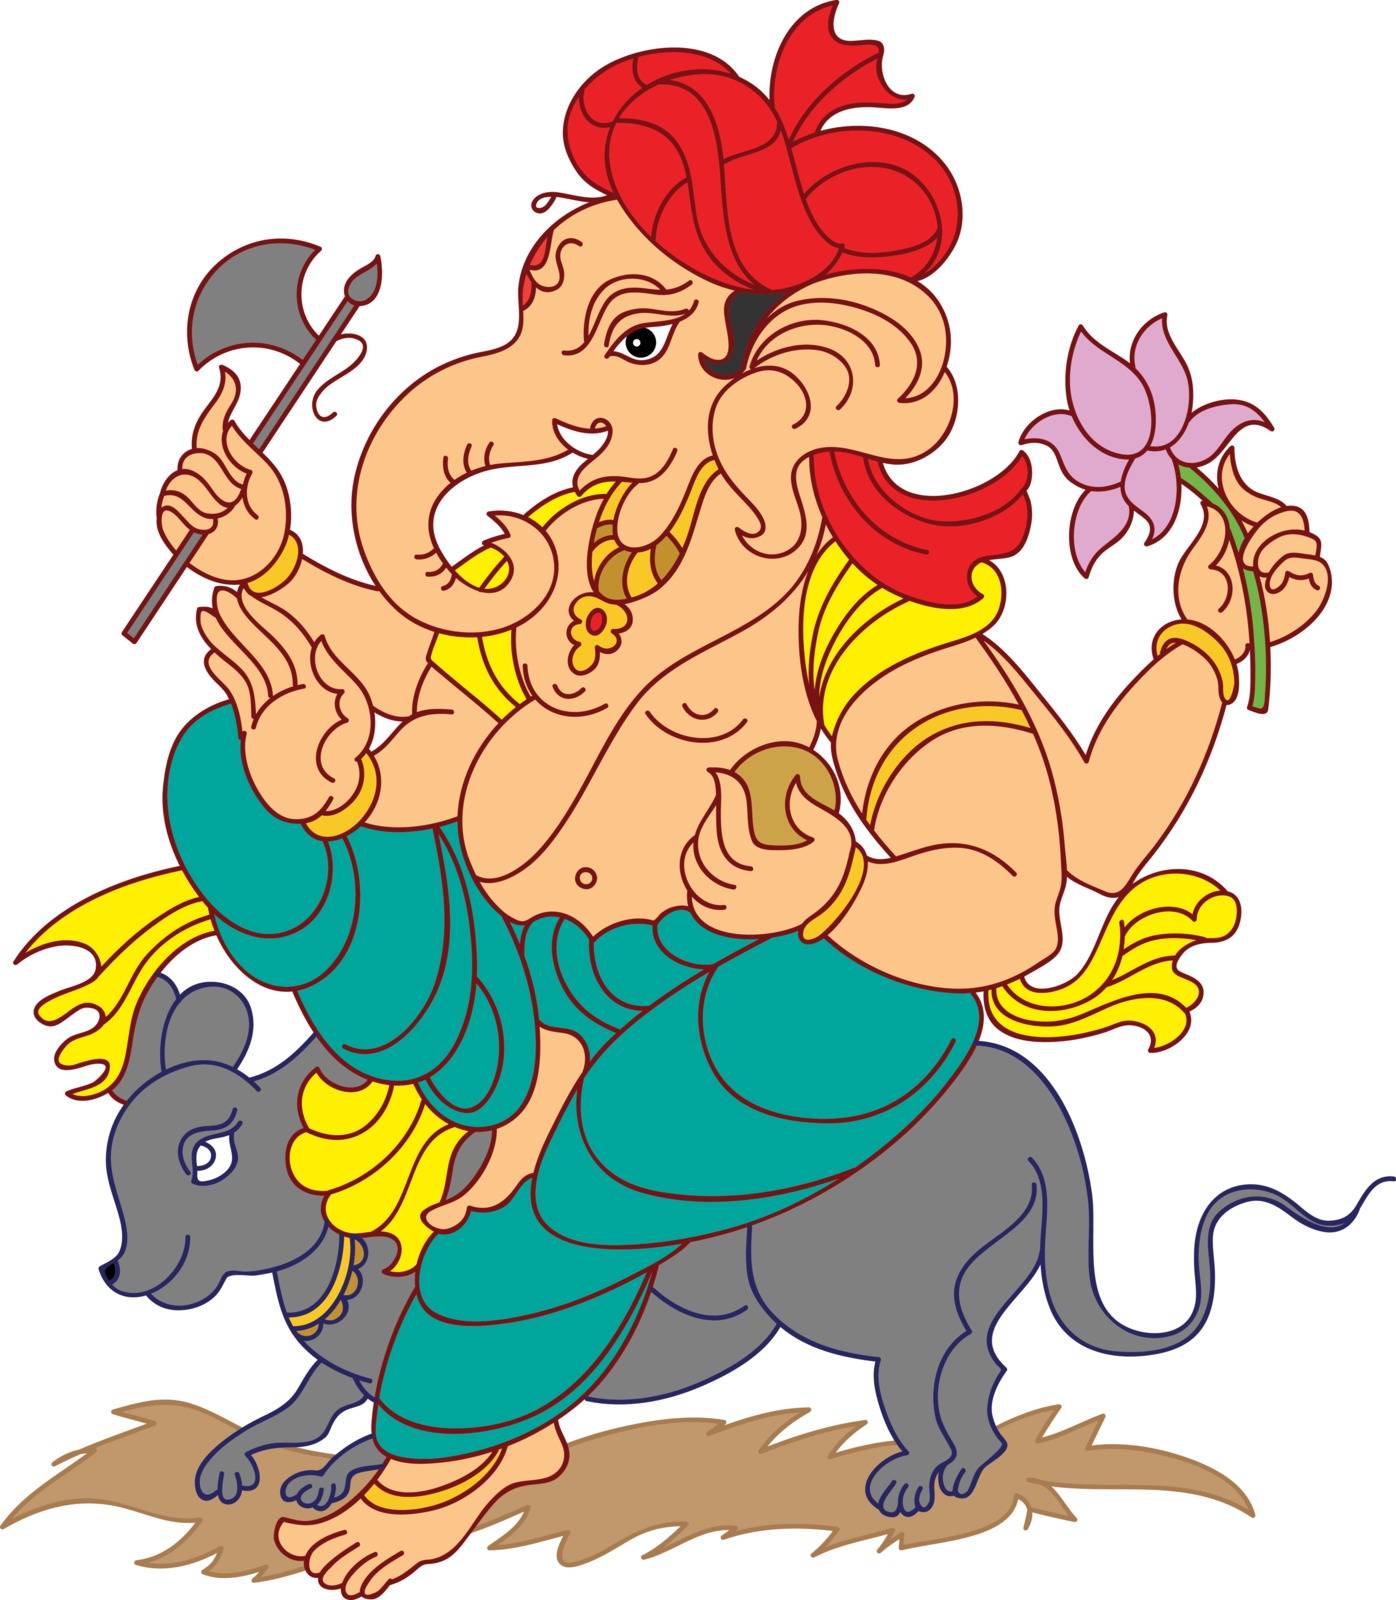 Ganesha The Lord Of Wisdom by AjayShri